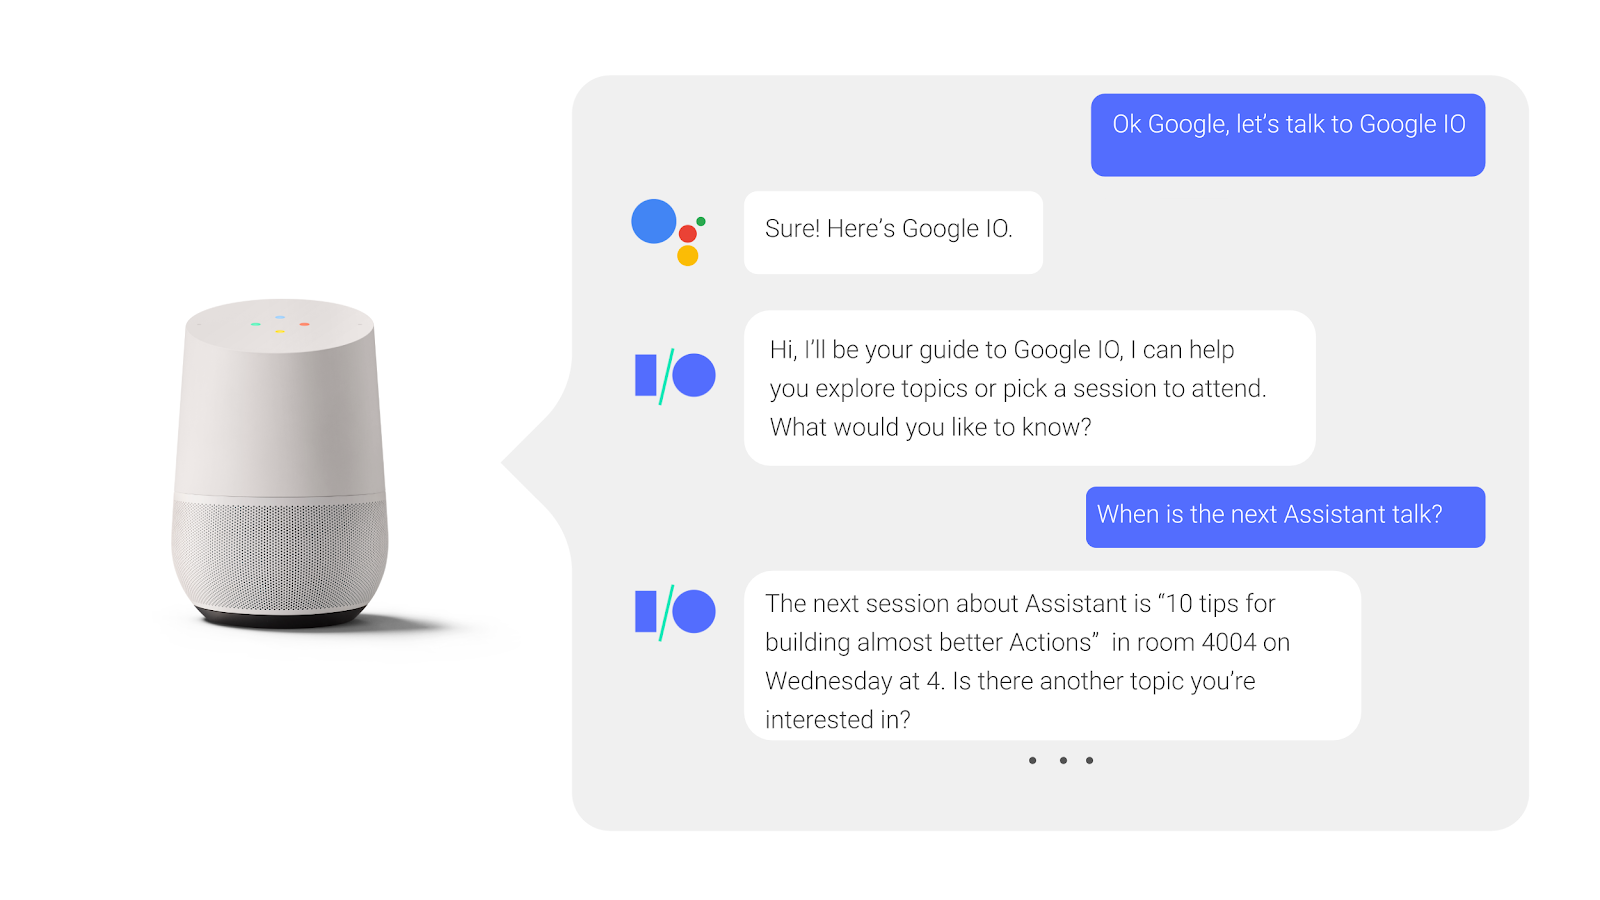 בשיחה הלוך ושוב עם Google Assistant, משתמש שואל אם מתקיימת שיחת ועידה ומקבל תשובה.